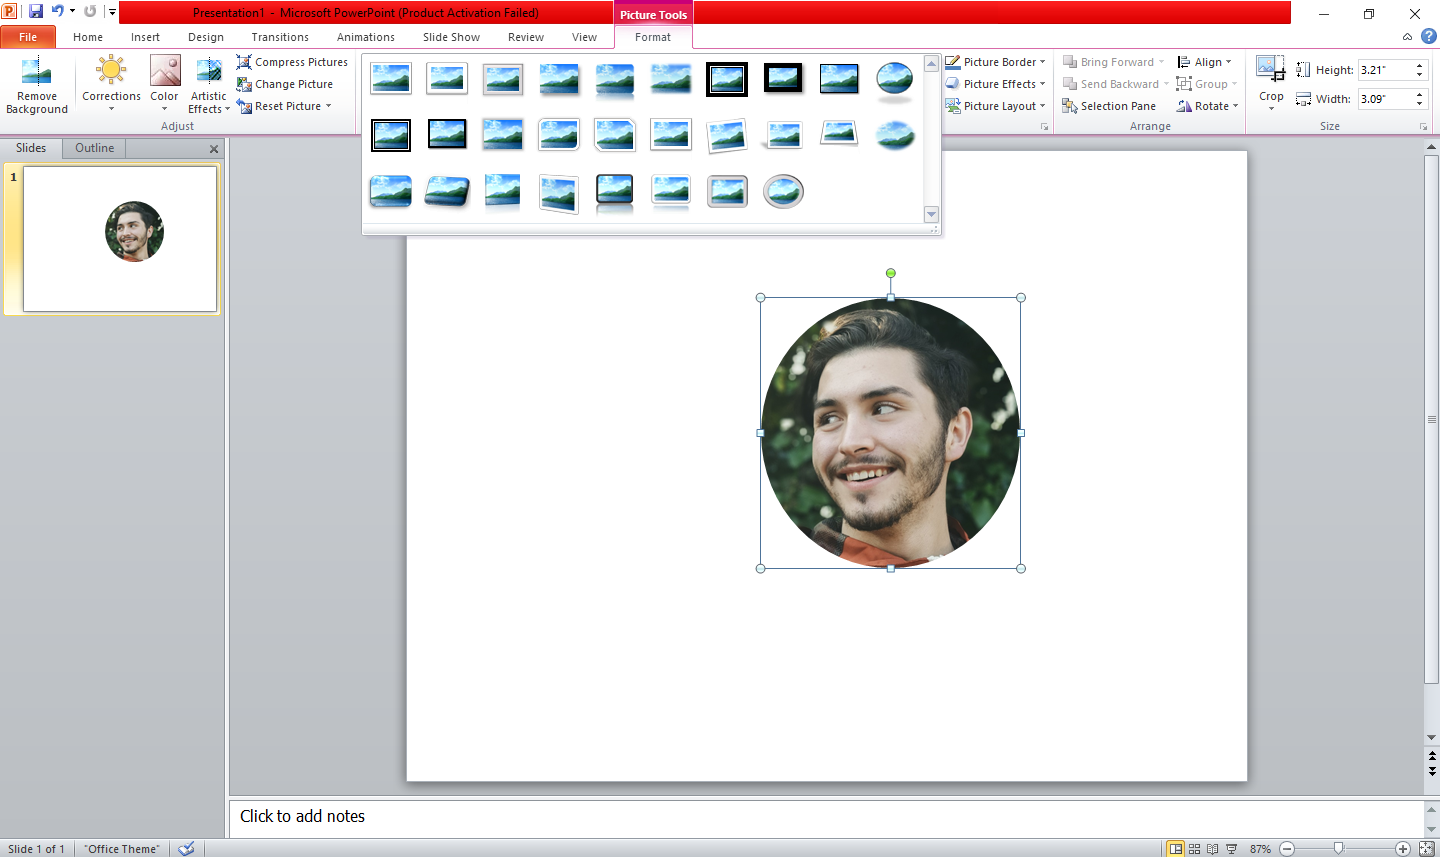 Picture Styles Settings in PowerPoint - Come ritagliare un’immagine in un cerchio perfetto in PowerPoint